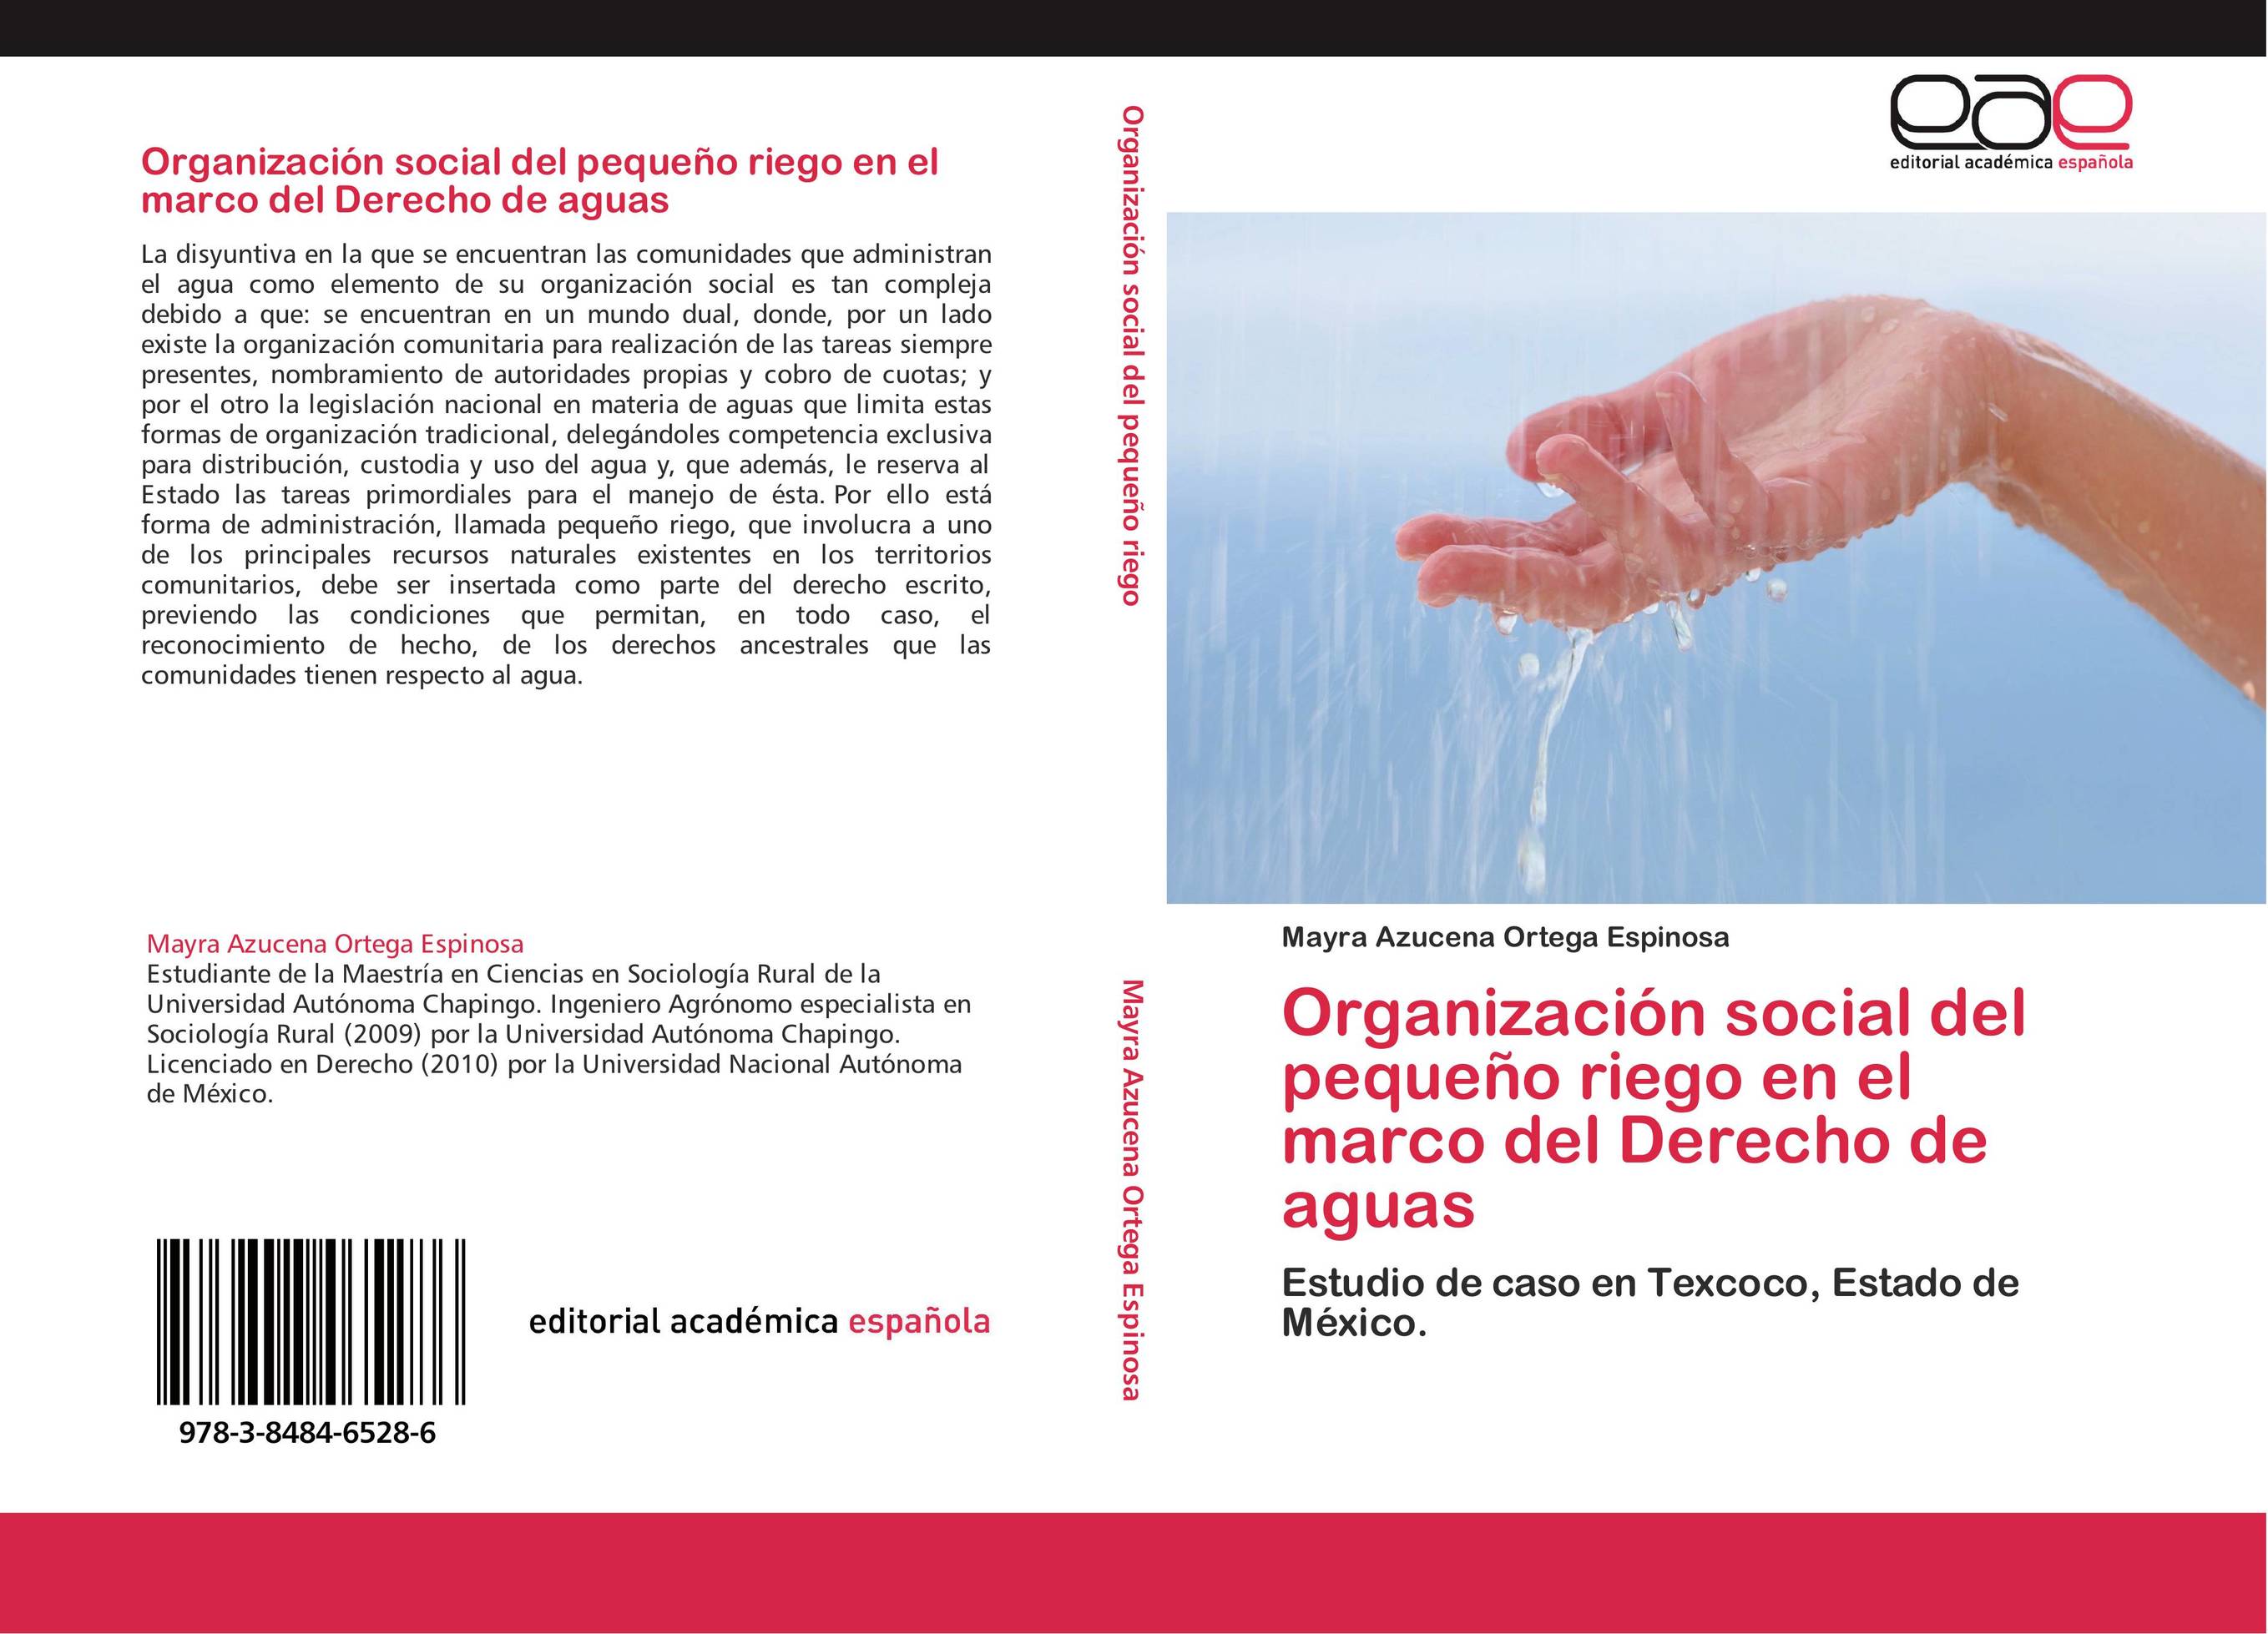 Organización social del pequeño riego en el marco del Derecho de aguas